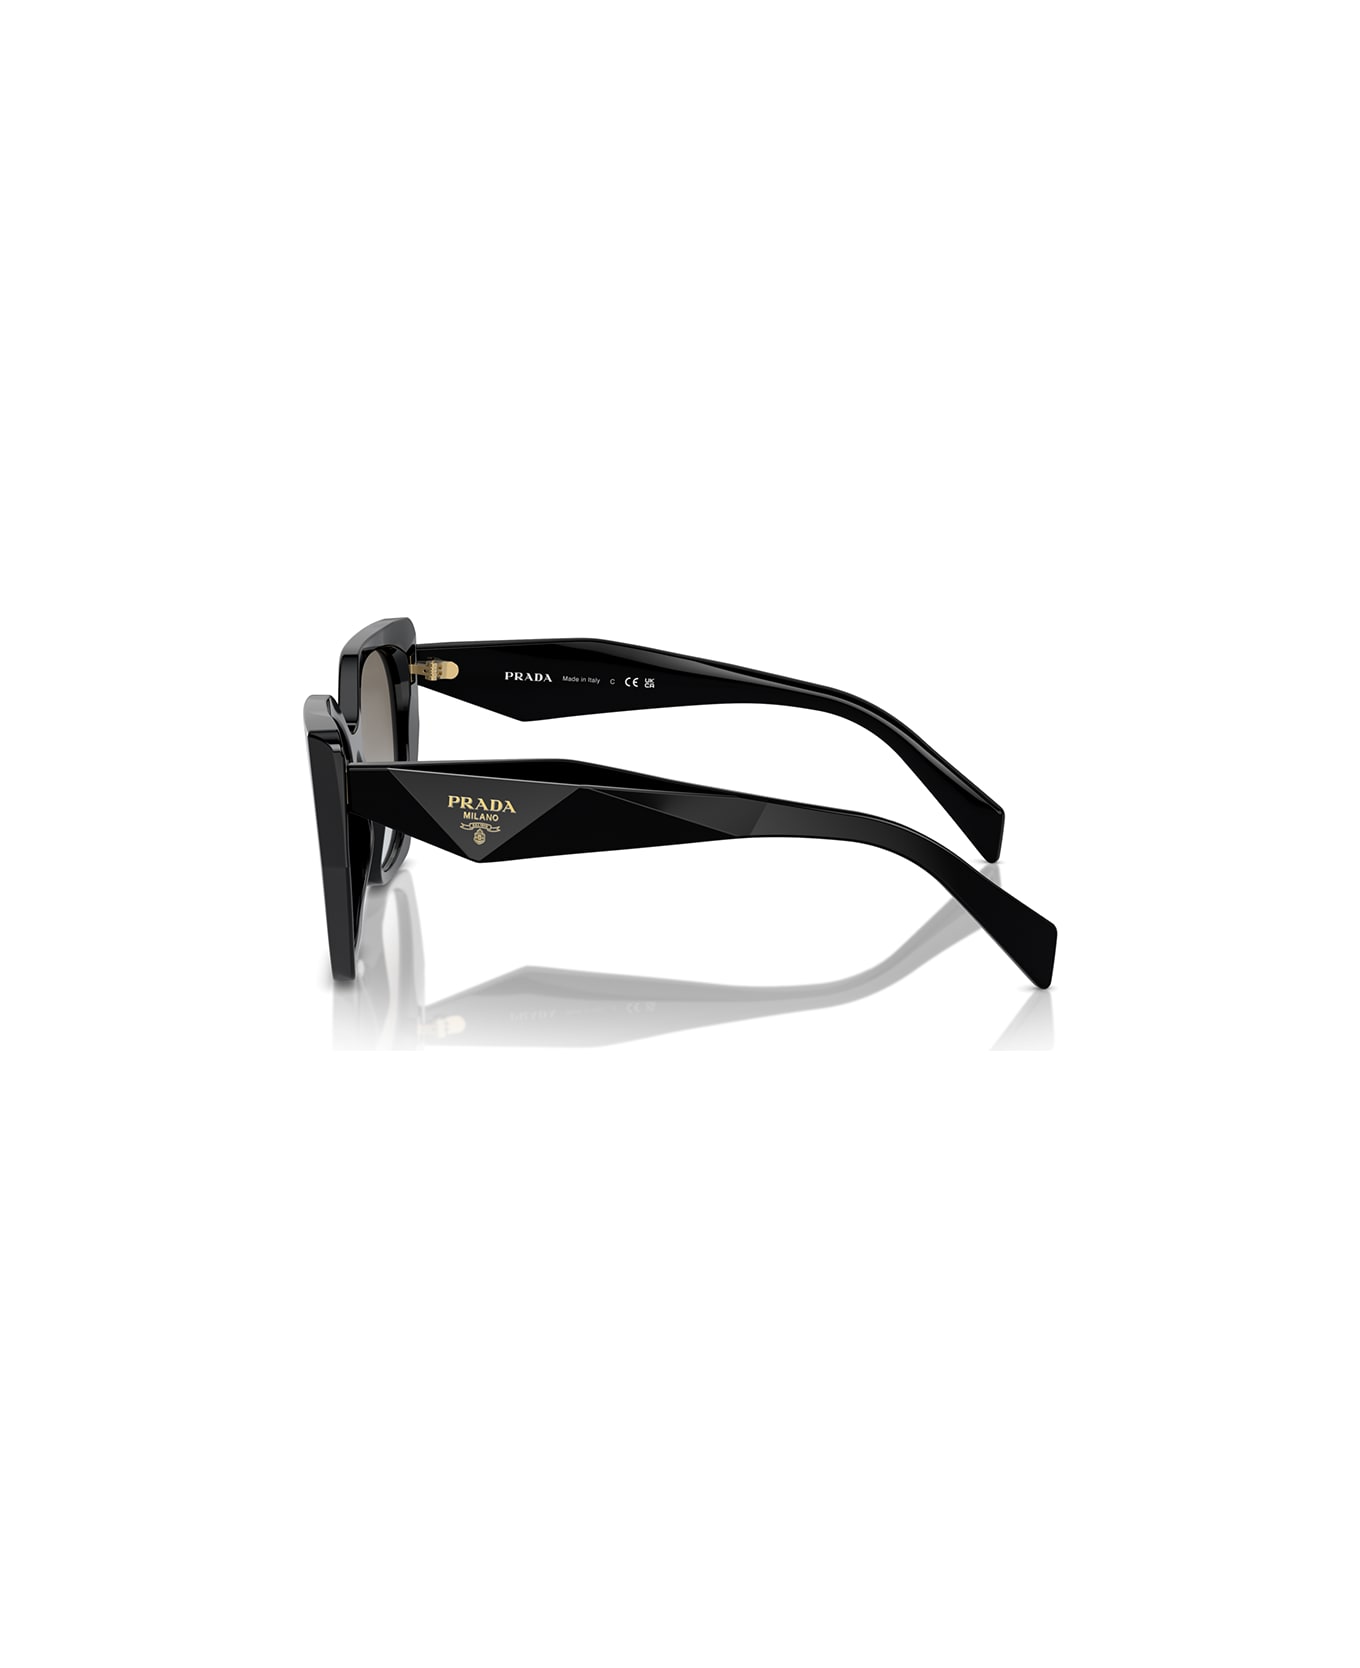 Prada Eyewear Sunglasses - Nero/Grigio サングラス